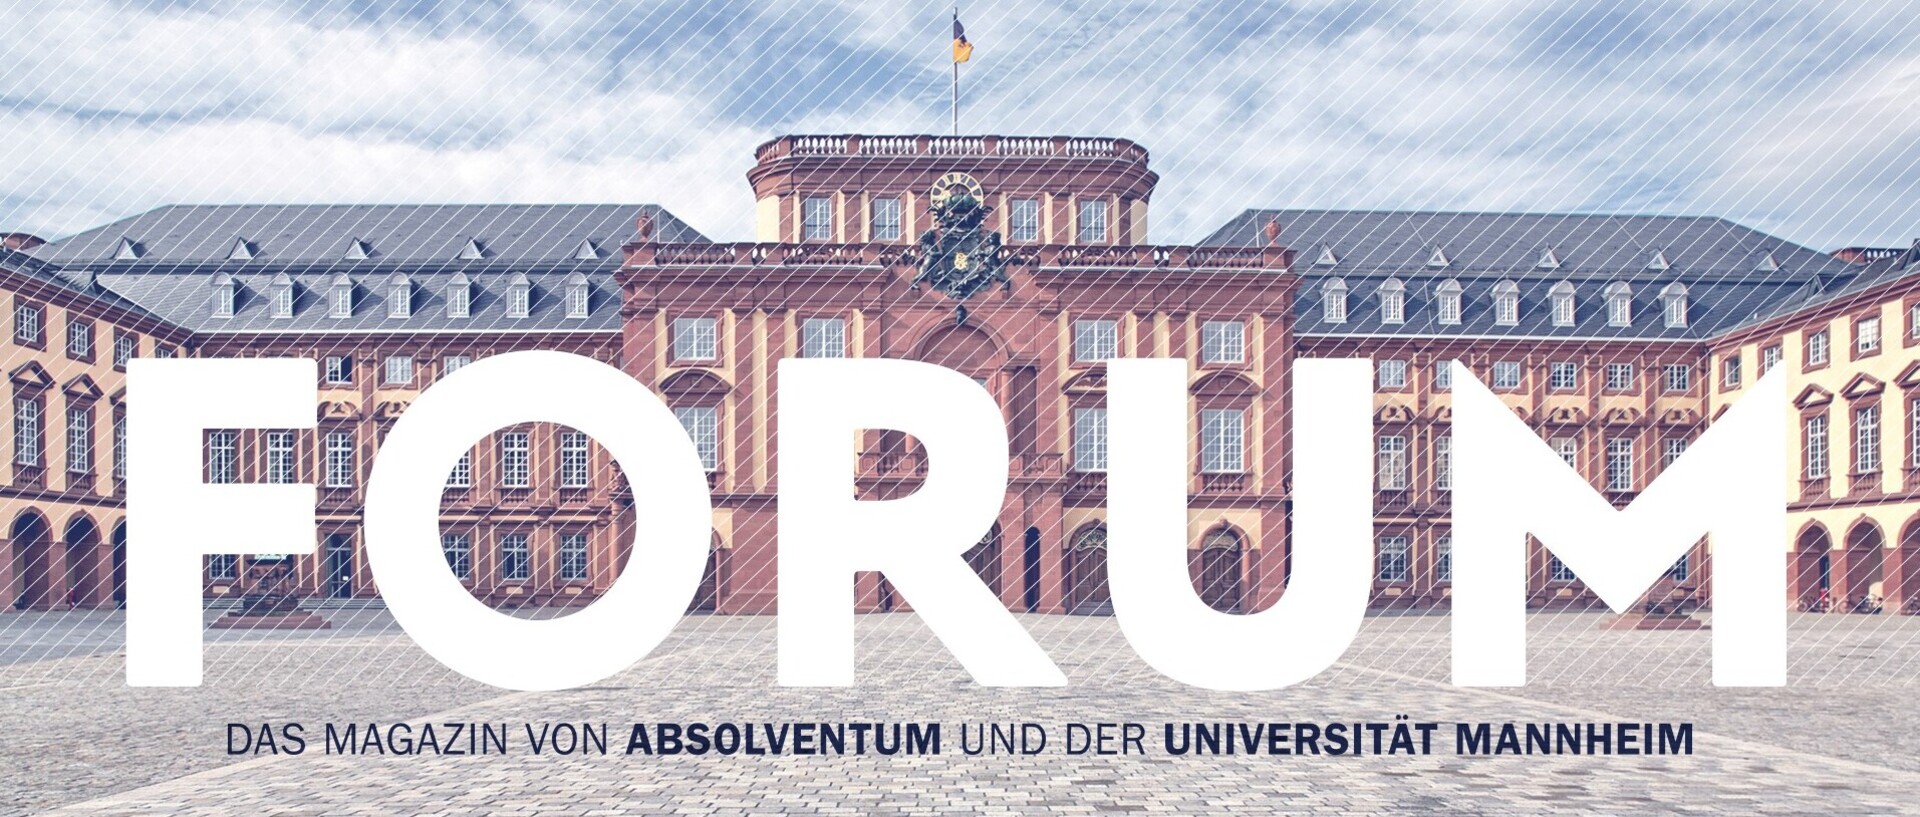 Bild der Universität Mannheim mit der Aufschrift "FORUM. Das Magazin von Absolventum und der Universität Mannheim."